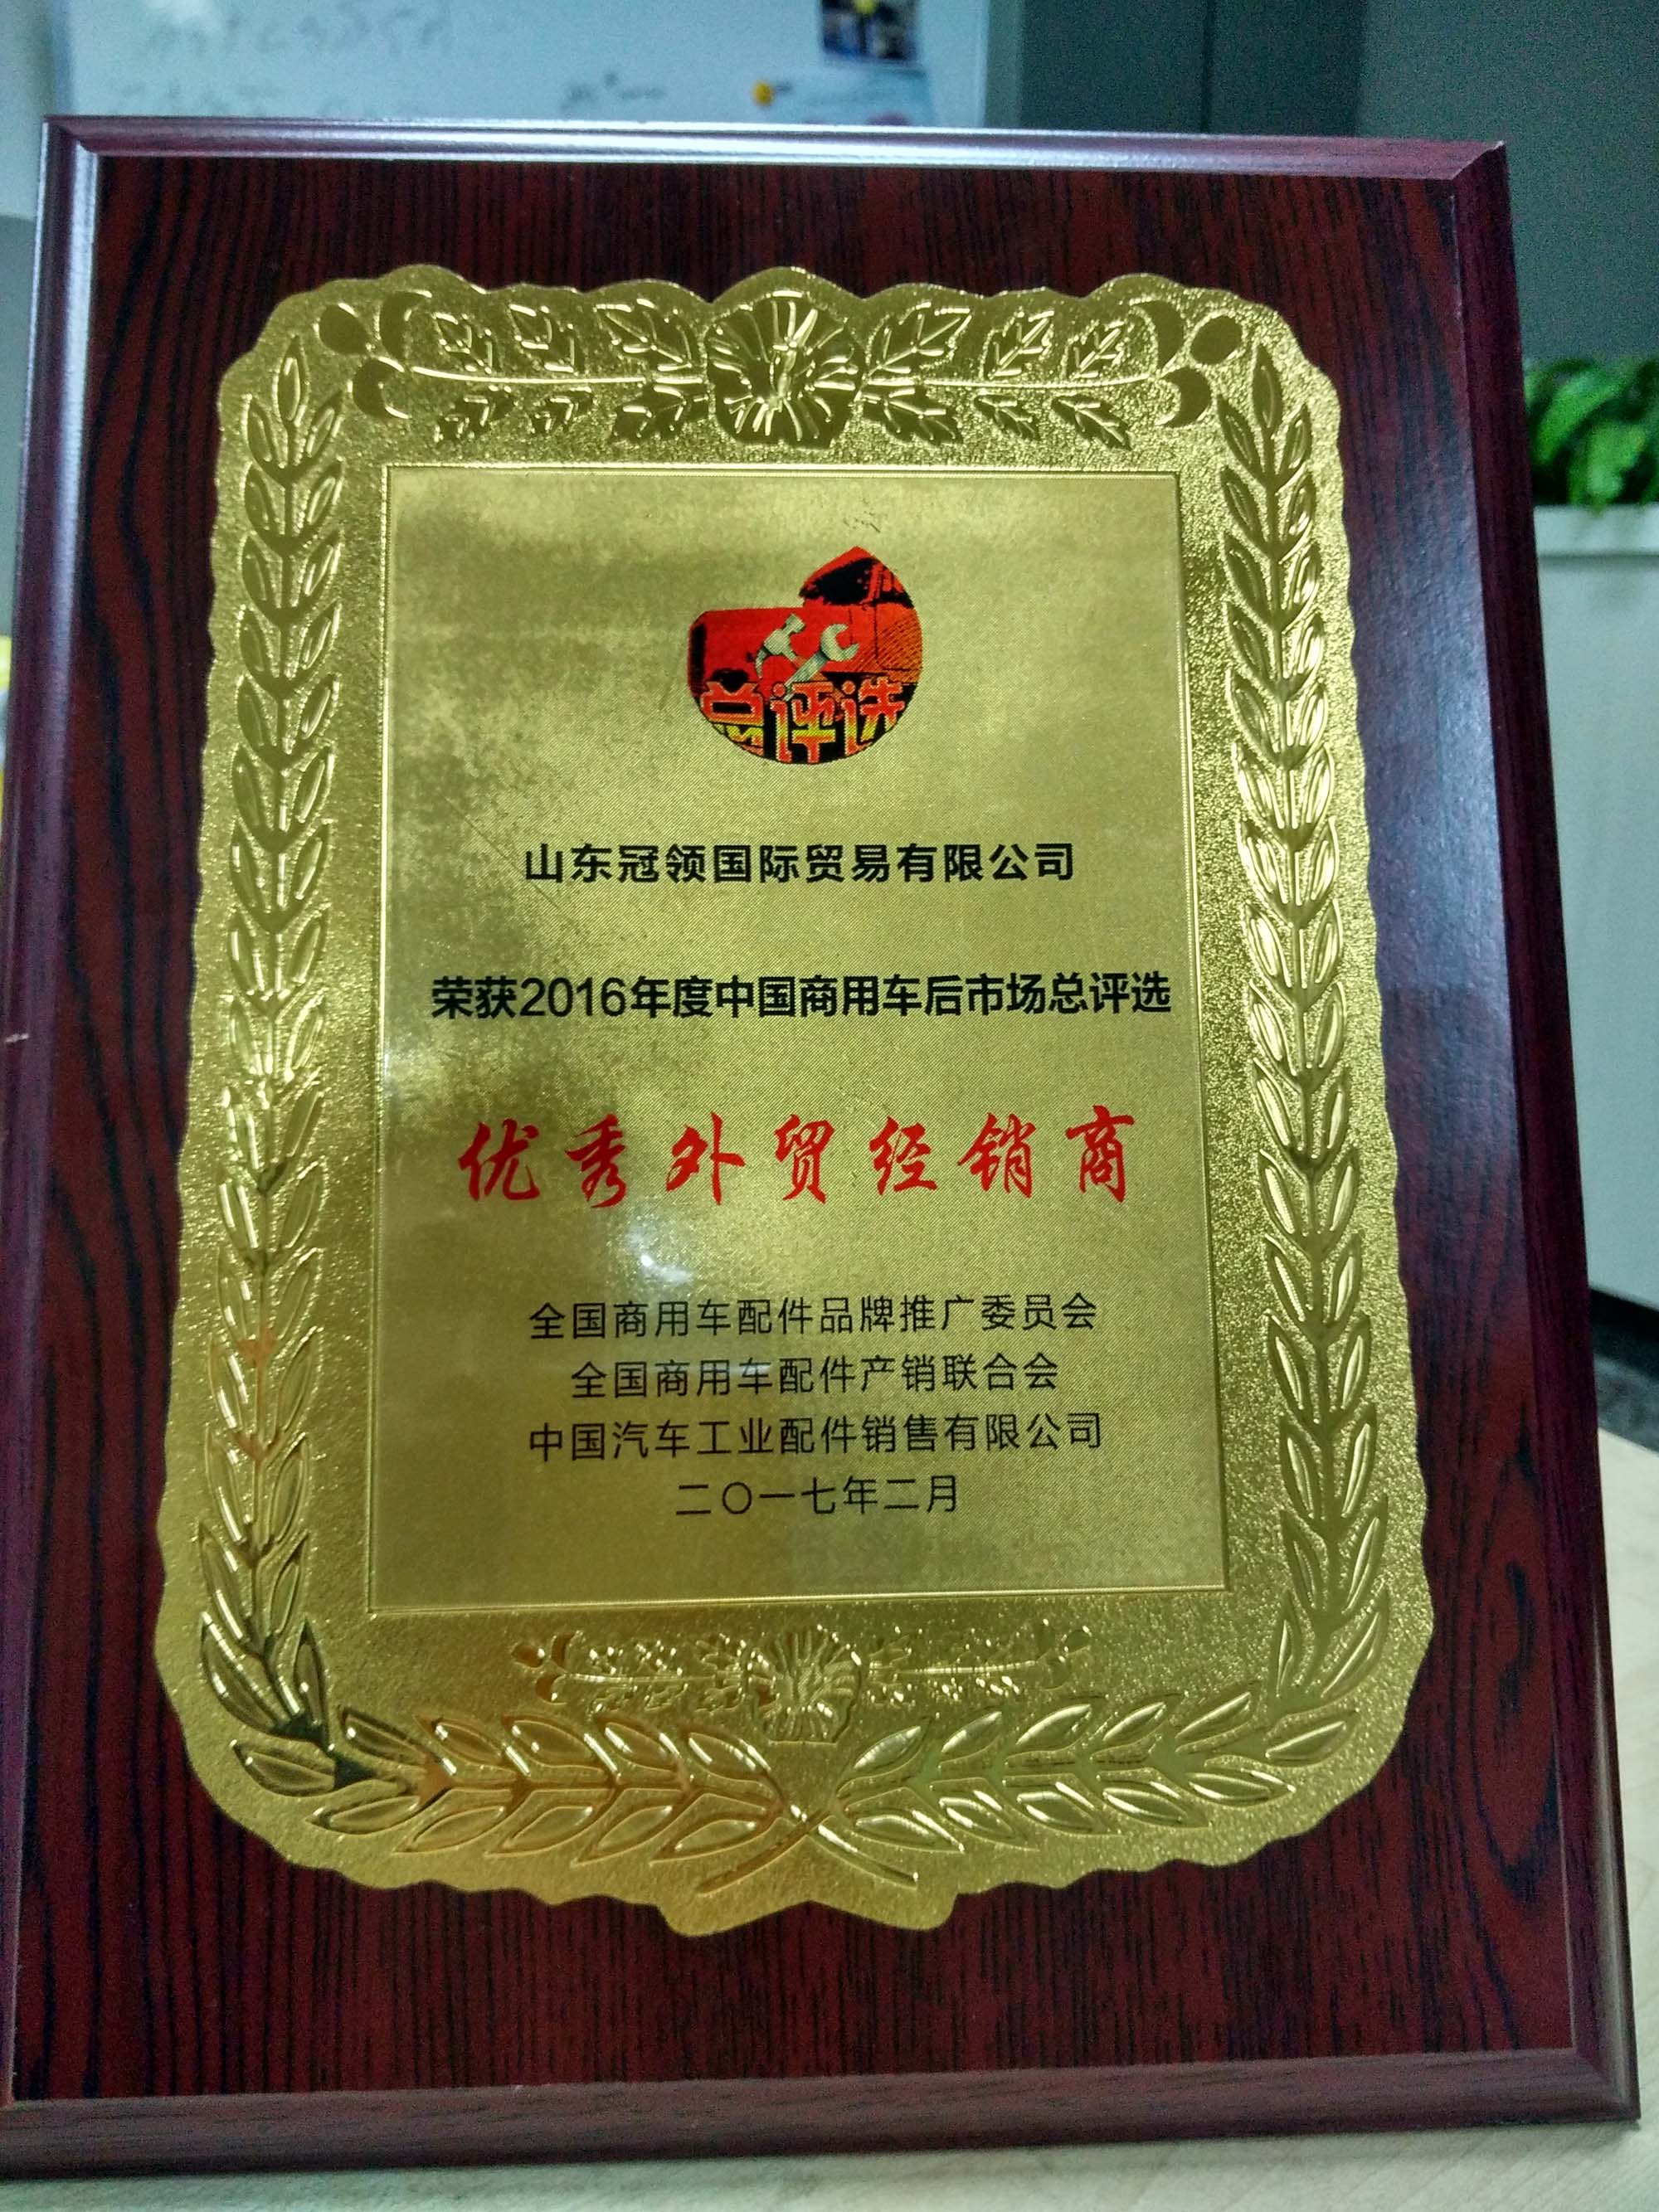 Pista Superior Ganhou o Excelente de Troca Internacional de Fainficante em Fevereiro de 2017。